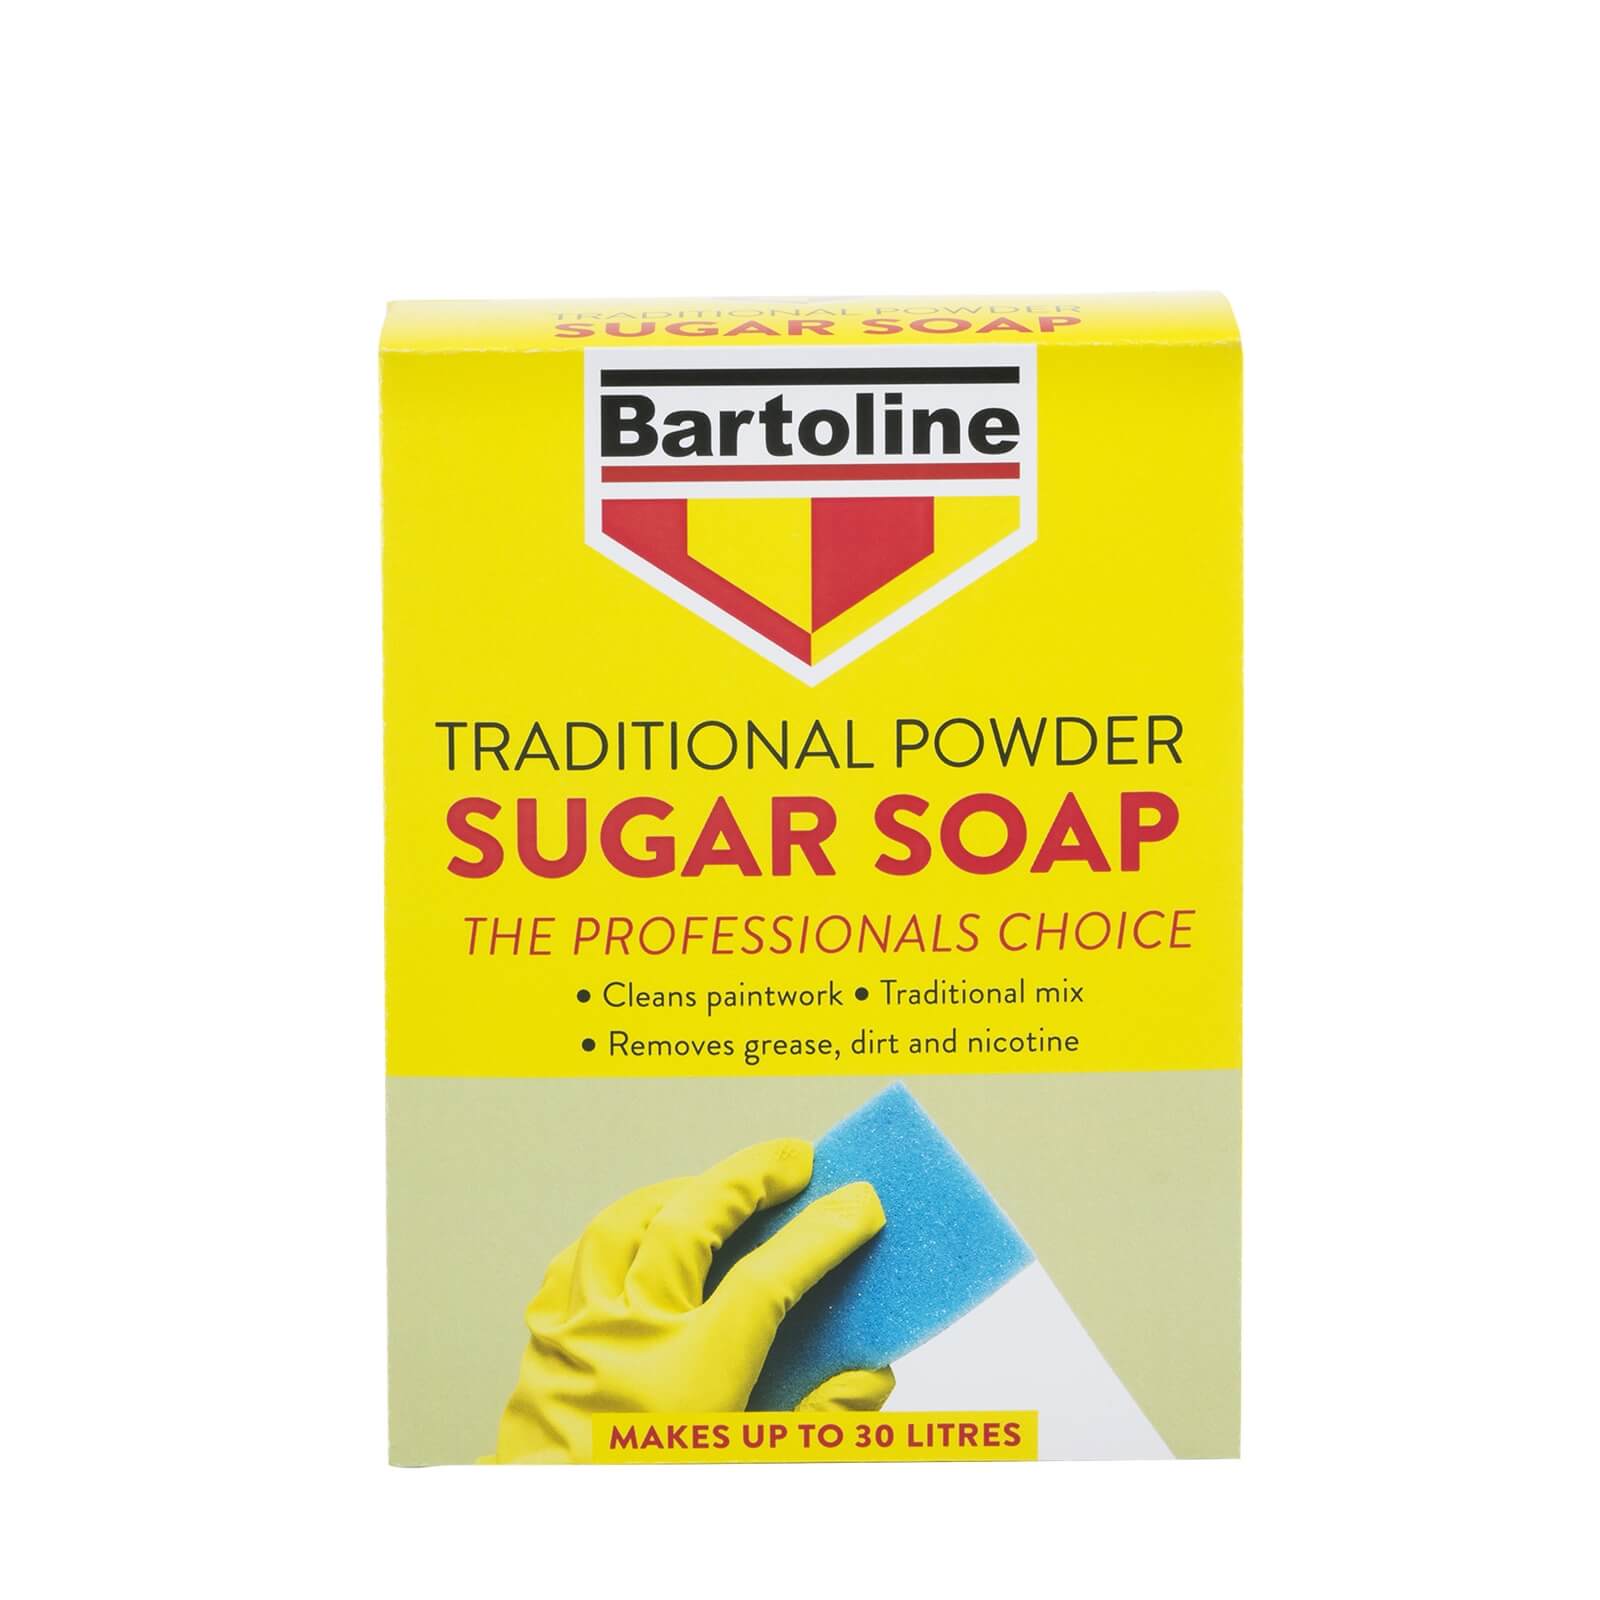 Bartoline Traditional Powder Sugar Soap - 1.5Kg